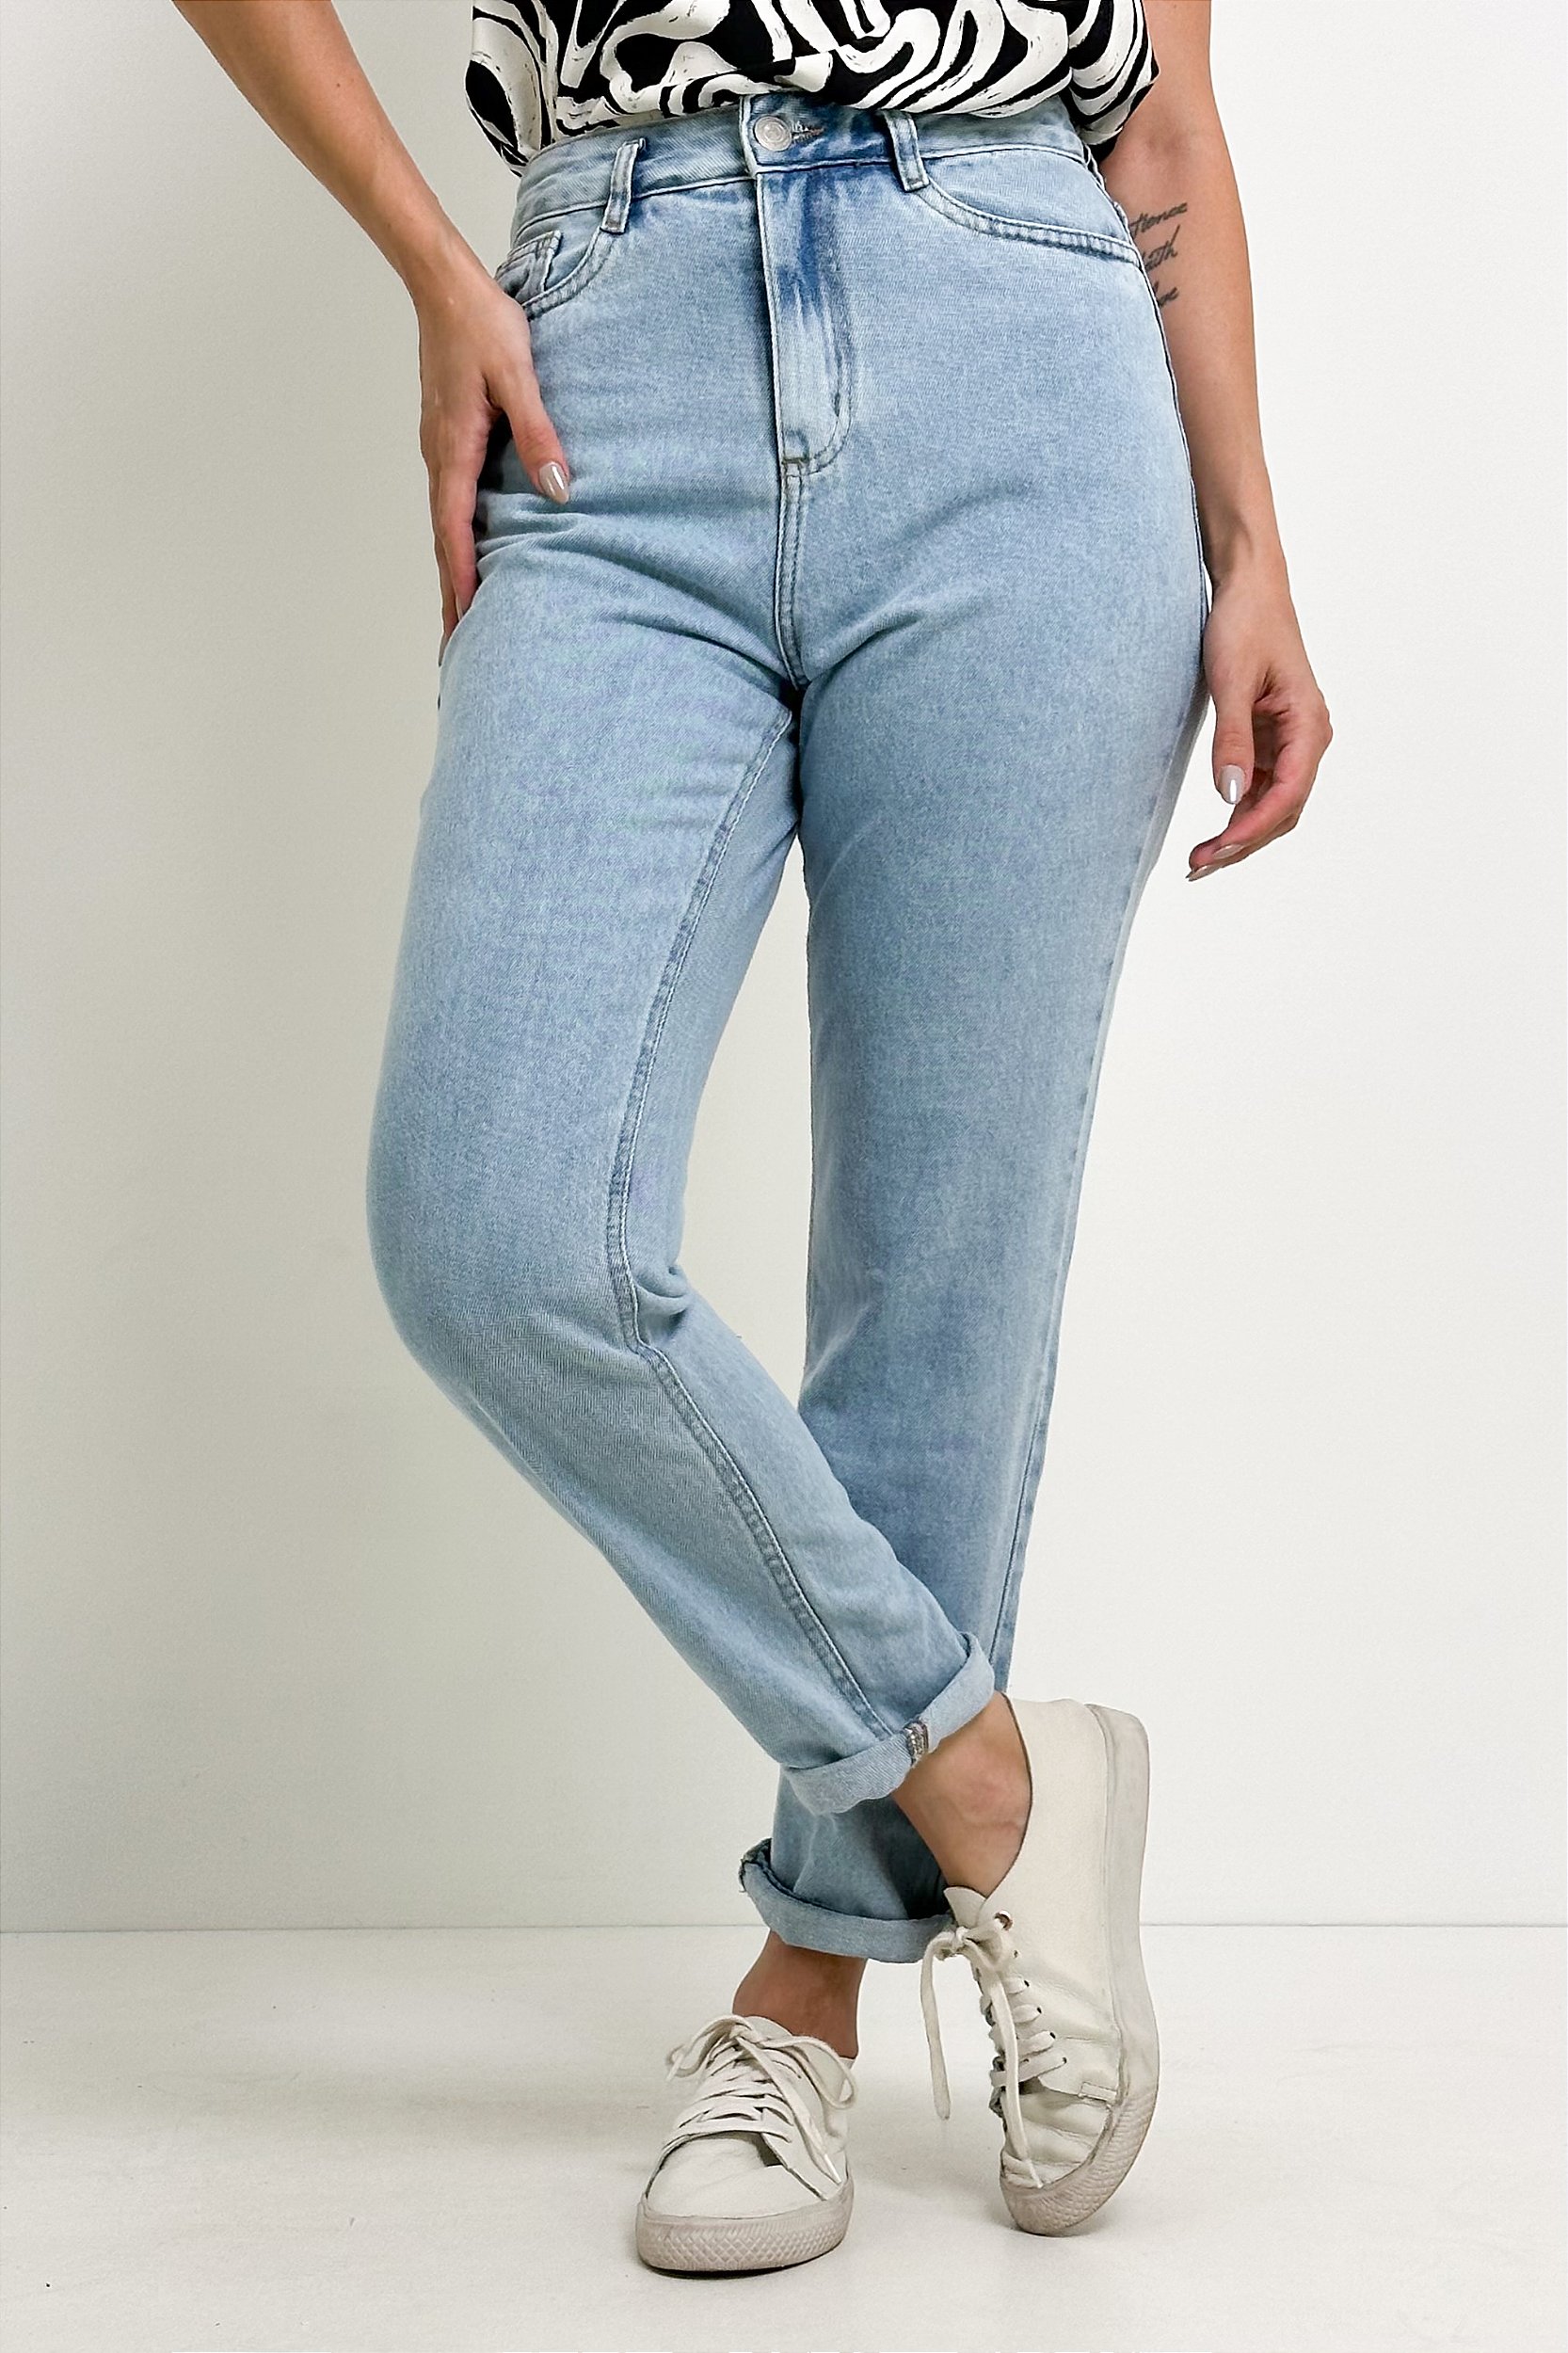 Mom jeans: 10 sugestões para usar a calça que é tendência atemporal